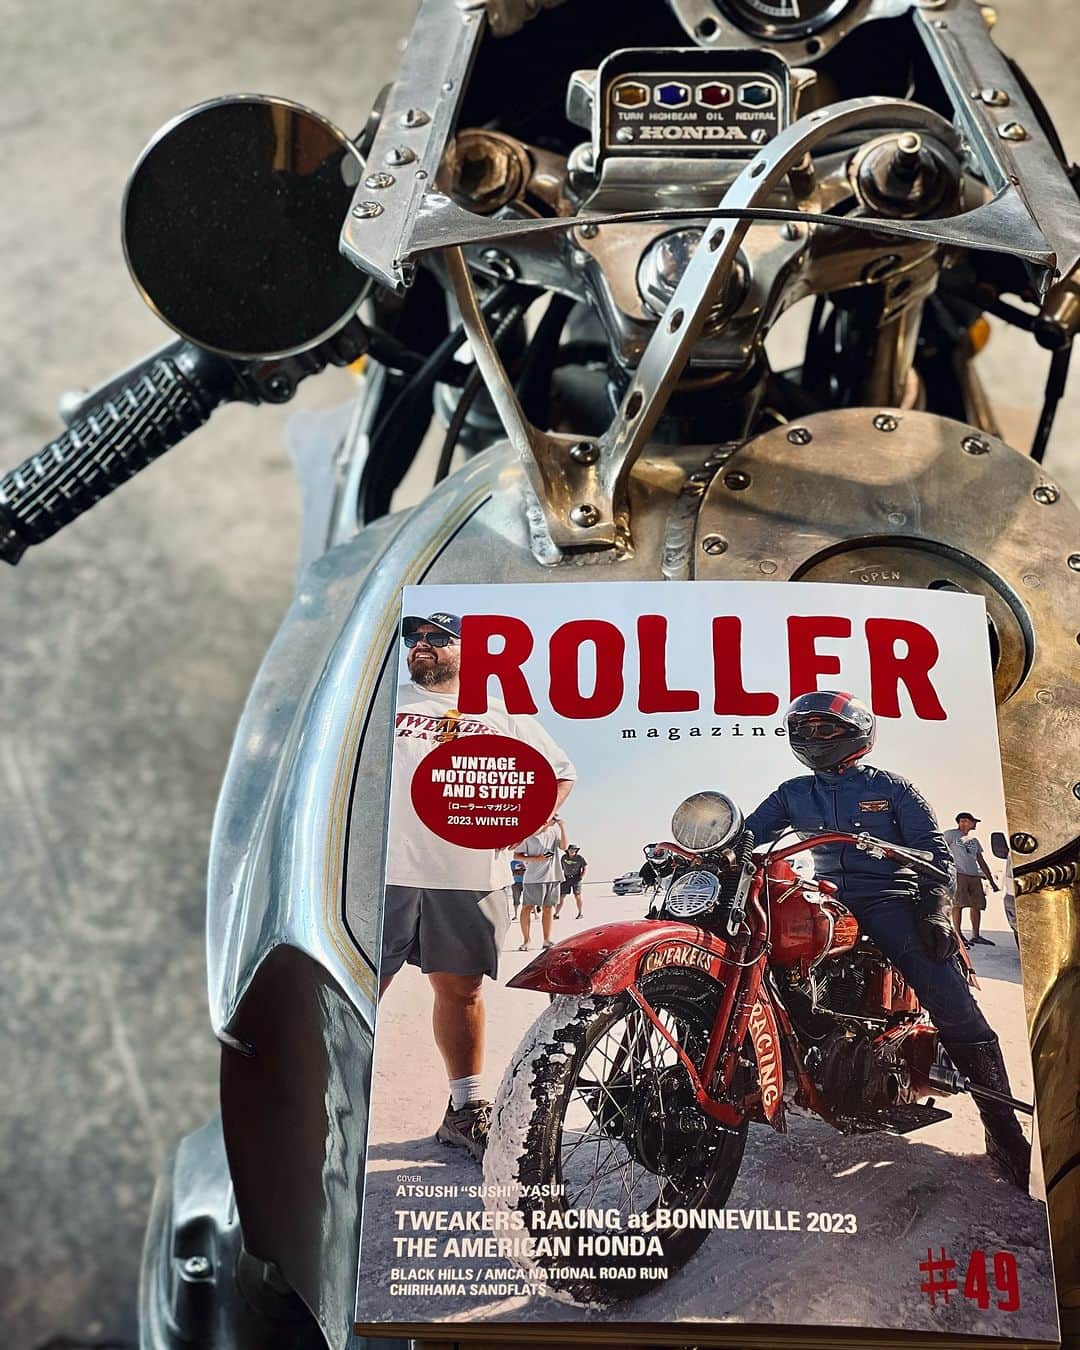 ウェスコのインスタグラム：「【メディア情報】 ROLLER magazine #49 発売中！  年4回発行の季刊誌、『ROLLER magazine』。 今号のWESCO LOVERSには、カスタムバイクシーンにおいて、通称"ZEROスタイル"とその名を世界中に知らしめた、チャボエンジニアリングの木村信也氏にご登場頂きました！  90年代、カスタムバイクシーンを席巻したZERO ENGINEERING。 独自の世界観で造り上げられるカスタムバイクは、日本国内はもとより海外でもその実力が高く評価され、日本人ビルダーの存在を世界に知らしめる一端となりました。  その影響力は計り知れないほど。 今現在、活躍をされているビルダーさんたちからも絶大な支持を集め、間違いなくシーンに衝撃と多大な影響を与え続けている一人でしょう。  そして、WESCO LOVERS内でご紹介するウエスコブーツは幾度となくリペアを施しながら30年以上履き続けている"Boss"をピックアップ。 キャノンボールなどのレースではレースアップブーツを着用されているので目新しく映るかもしれません。  さらに！！ 最新刊の巻頭ではWESCO LOVERS取材時に撮影した、'79 FX "Shaker"でライドする木村信也氏をWESCO JAPANの見開きの広告として起用させて頂きました！  ぜひ、お取り扱い店でお買い求めのうえご覧ください。  " Special Thanks to Shinya Kimura, chabott engineering @_____menacing___ayu_____ "  -Contents- WIDE OPEN ALL THE TIME LETTERS FROM FKN AHOLE CHIRIHAMA SANDFLATS 2023 FIFTY WEIGHT FORECAST 2023 AMCA BLACK HILLS NATIONAL ROAD RUN WHEELS LOVERS DAYS THE AMERICAN HONDA etc...  【Staff Blog】 https://wescojapan.blogspot.com/2023/12/roller-magazine-49.html?m=1 ・ @wesco_japan アカウントトップのURLからブログへリンクします。 ・ #ROLLERmagazine #49 #WESCOLOVERS #ShinyaKimura #chabottengineering #westcoastshoecompany #wesco #wescoboots #scapoose #oregon #madeinUSA🇺🇸 #since1918 #osaka #wescojapan #tokyo #wescoebisu #wescosetagaya」